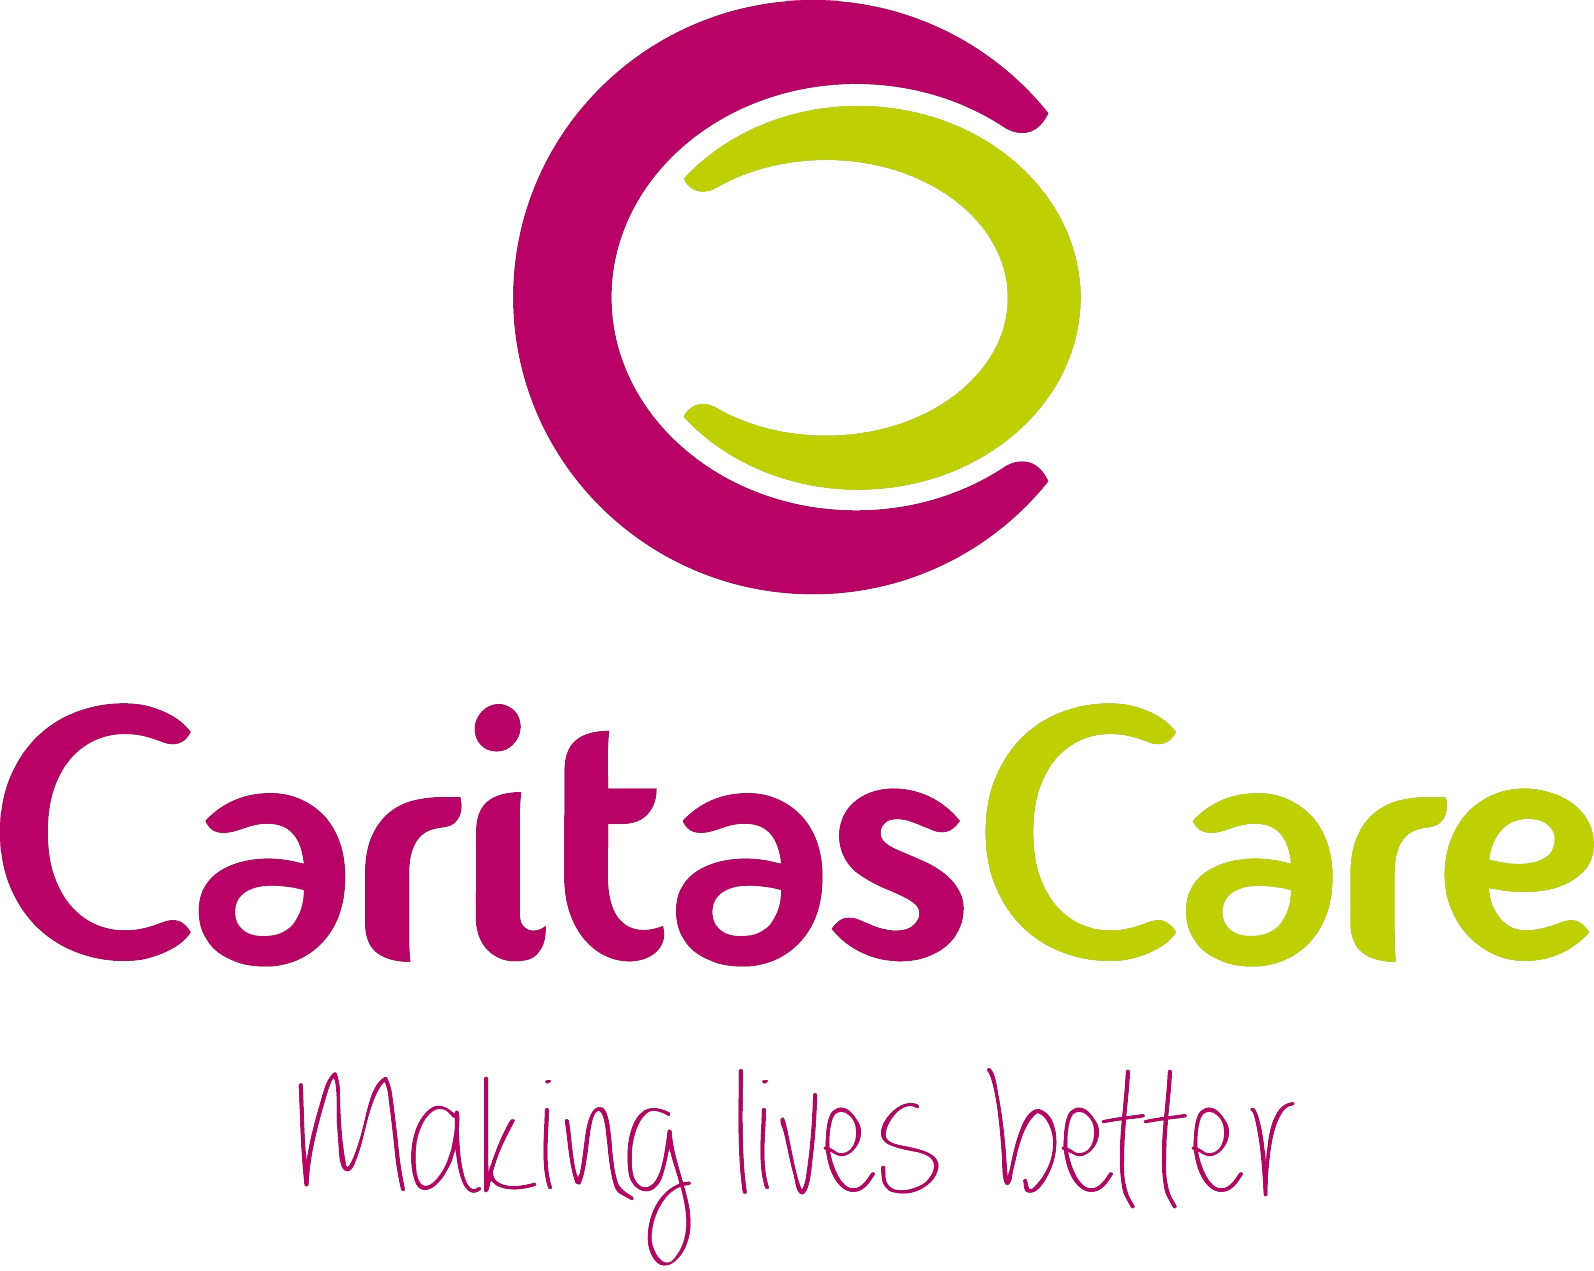 Our Aim - - Caritas Care (1594x1271)